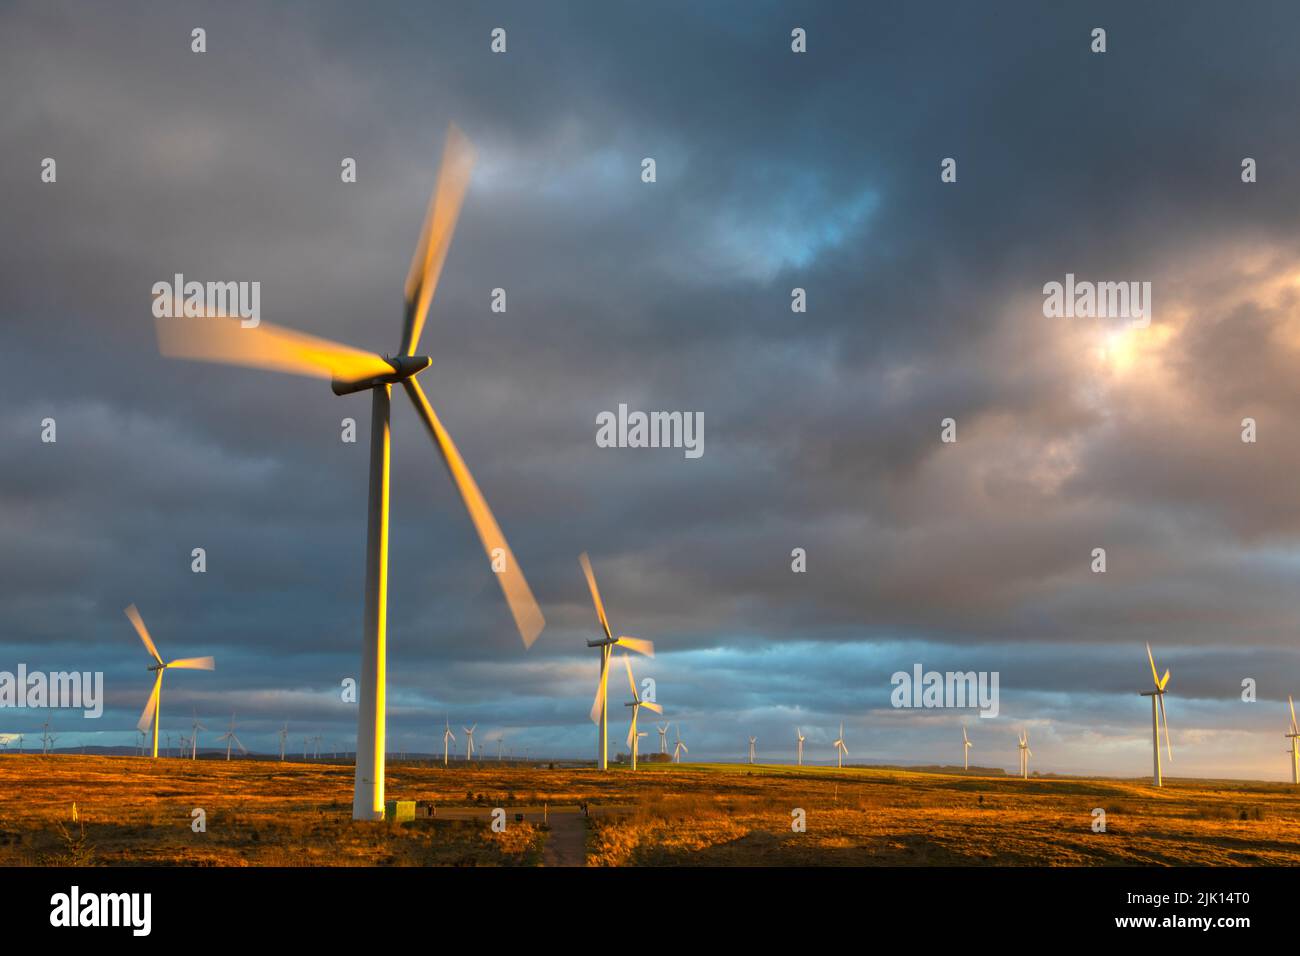 Éoliennes au coucher du soleil avec ciel orageux, Whitelee Windfarm, East Renfrewshire, Écosse, Royaume-Uni, Europe Banque D'Images